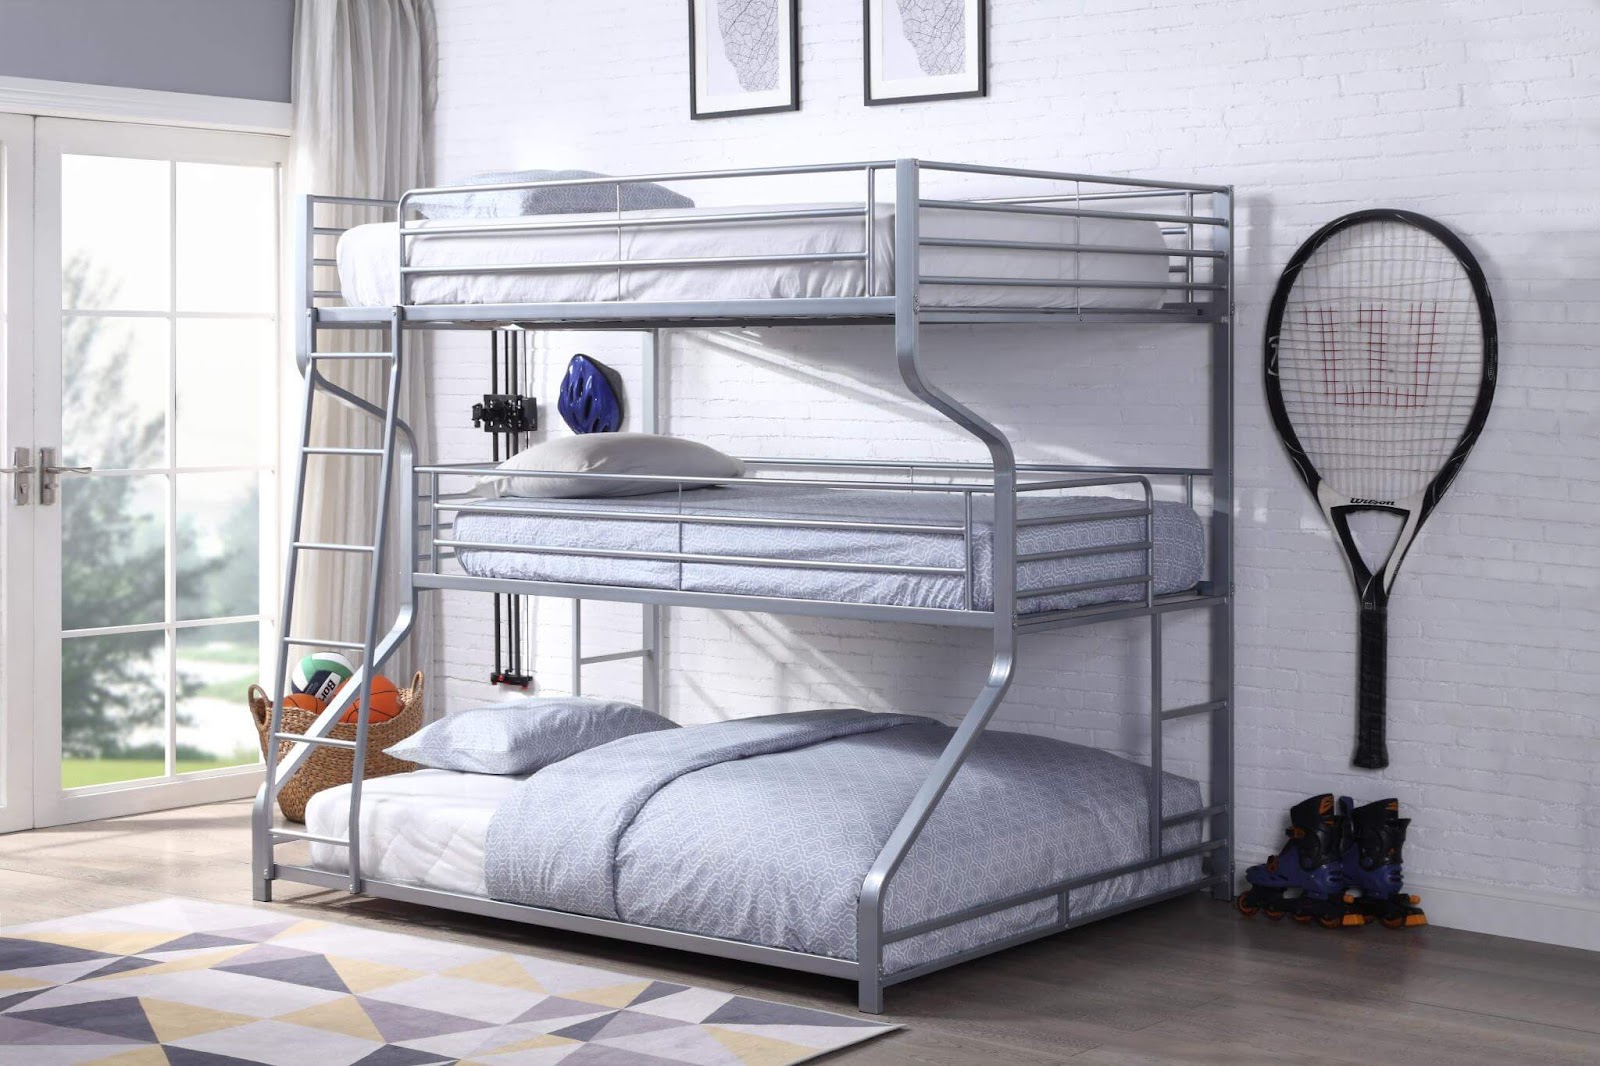 Mẫu giường tầng rẻ giá đẹp làm bằng sắt 4